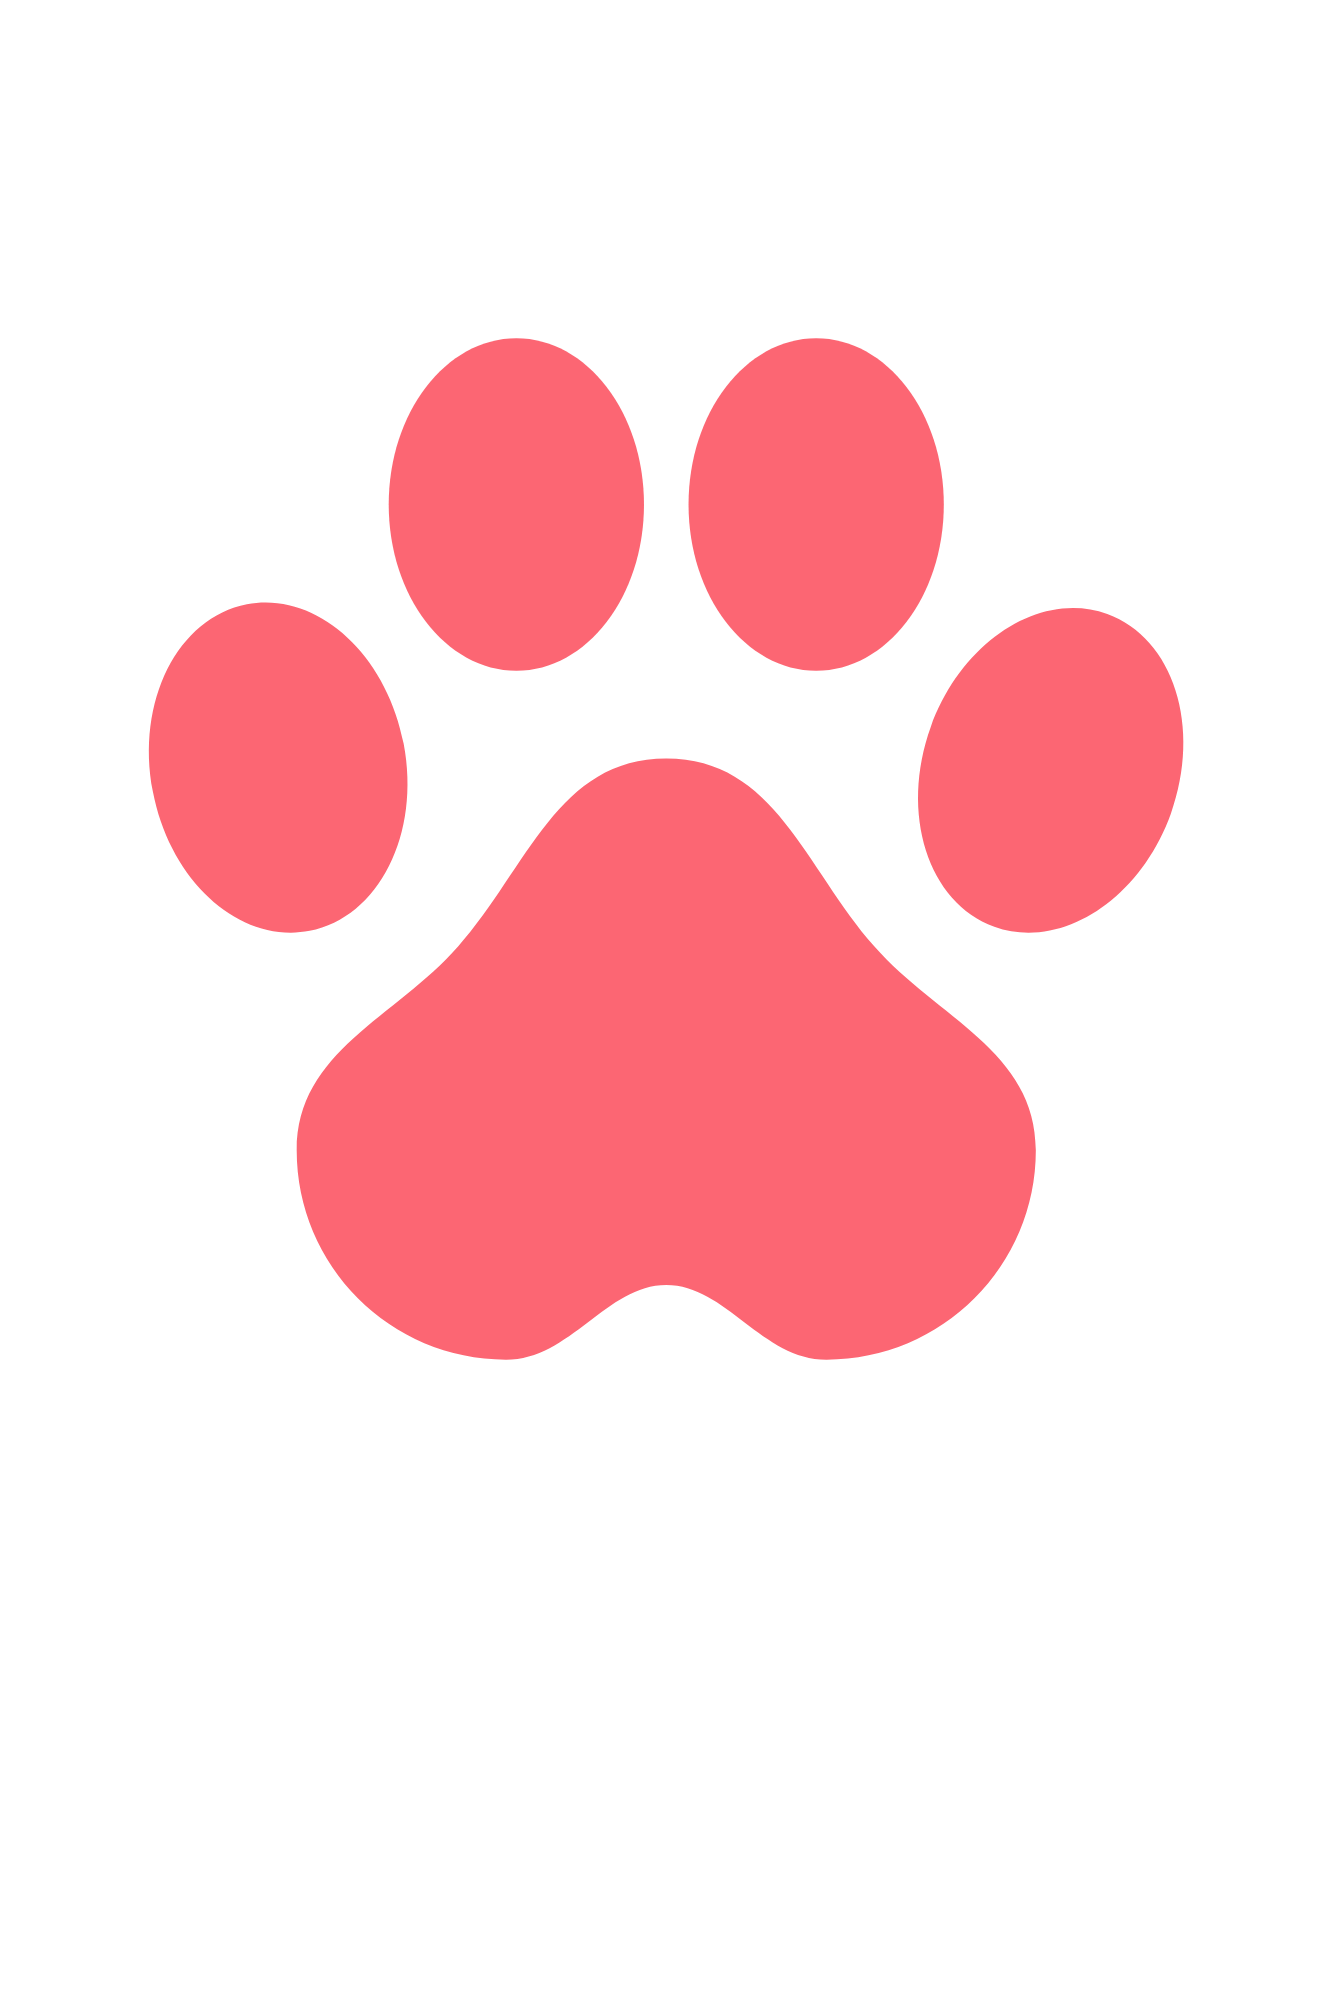 3 Aufhängepunkte, die von rosafarbenen, herzförmigen Hundepfotenspur gebildet sind